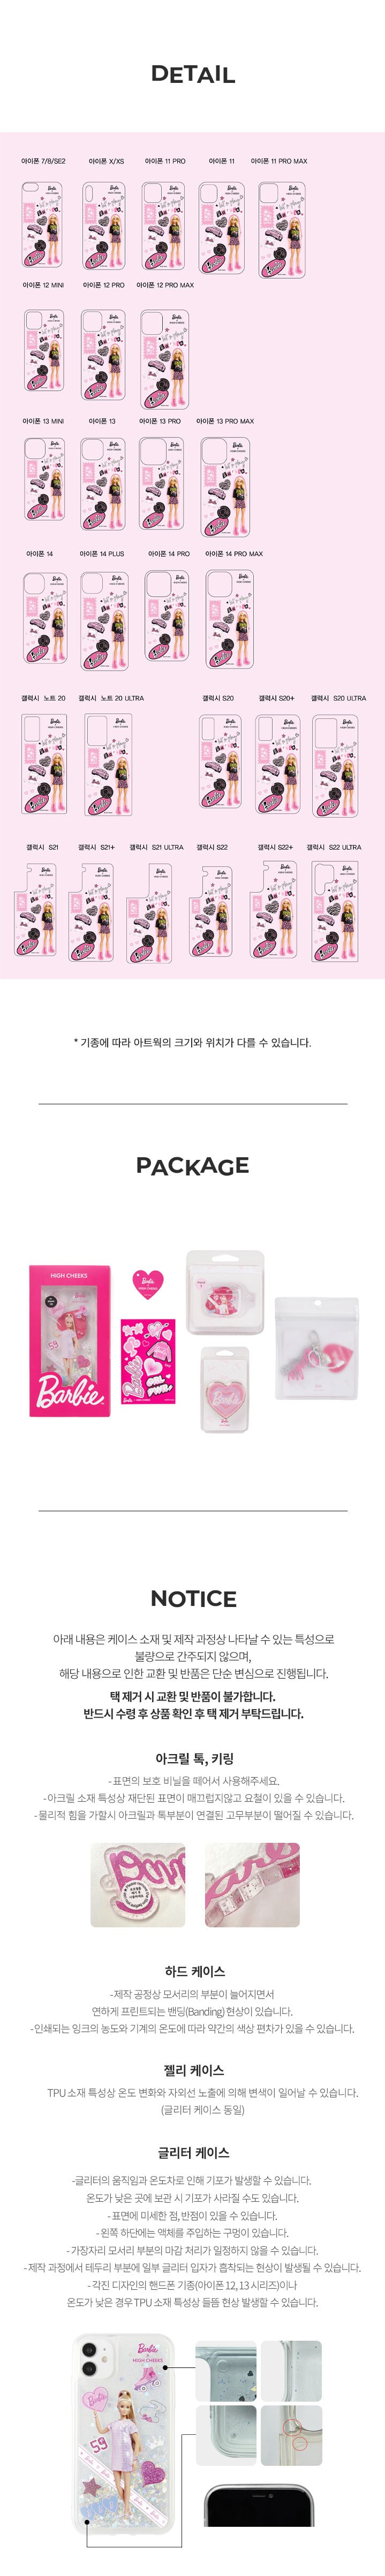 Barbie Sticker Clear Phone Case